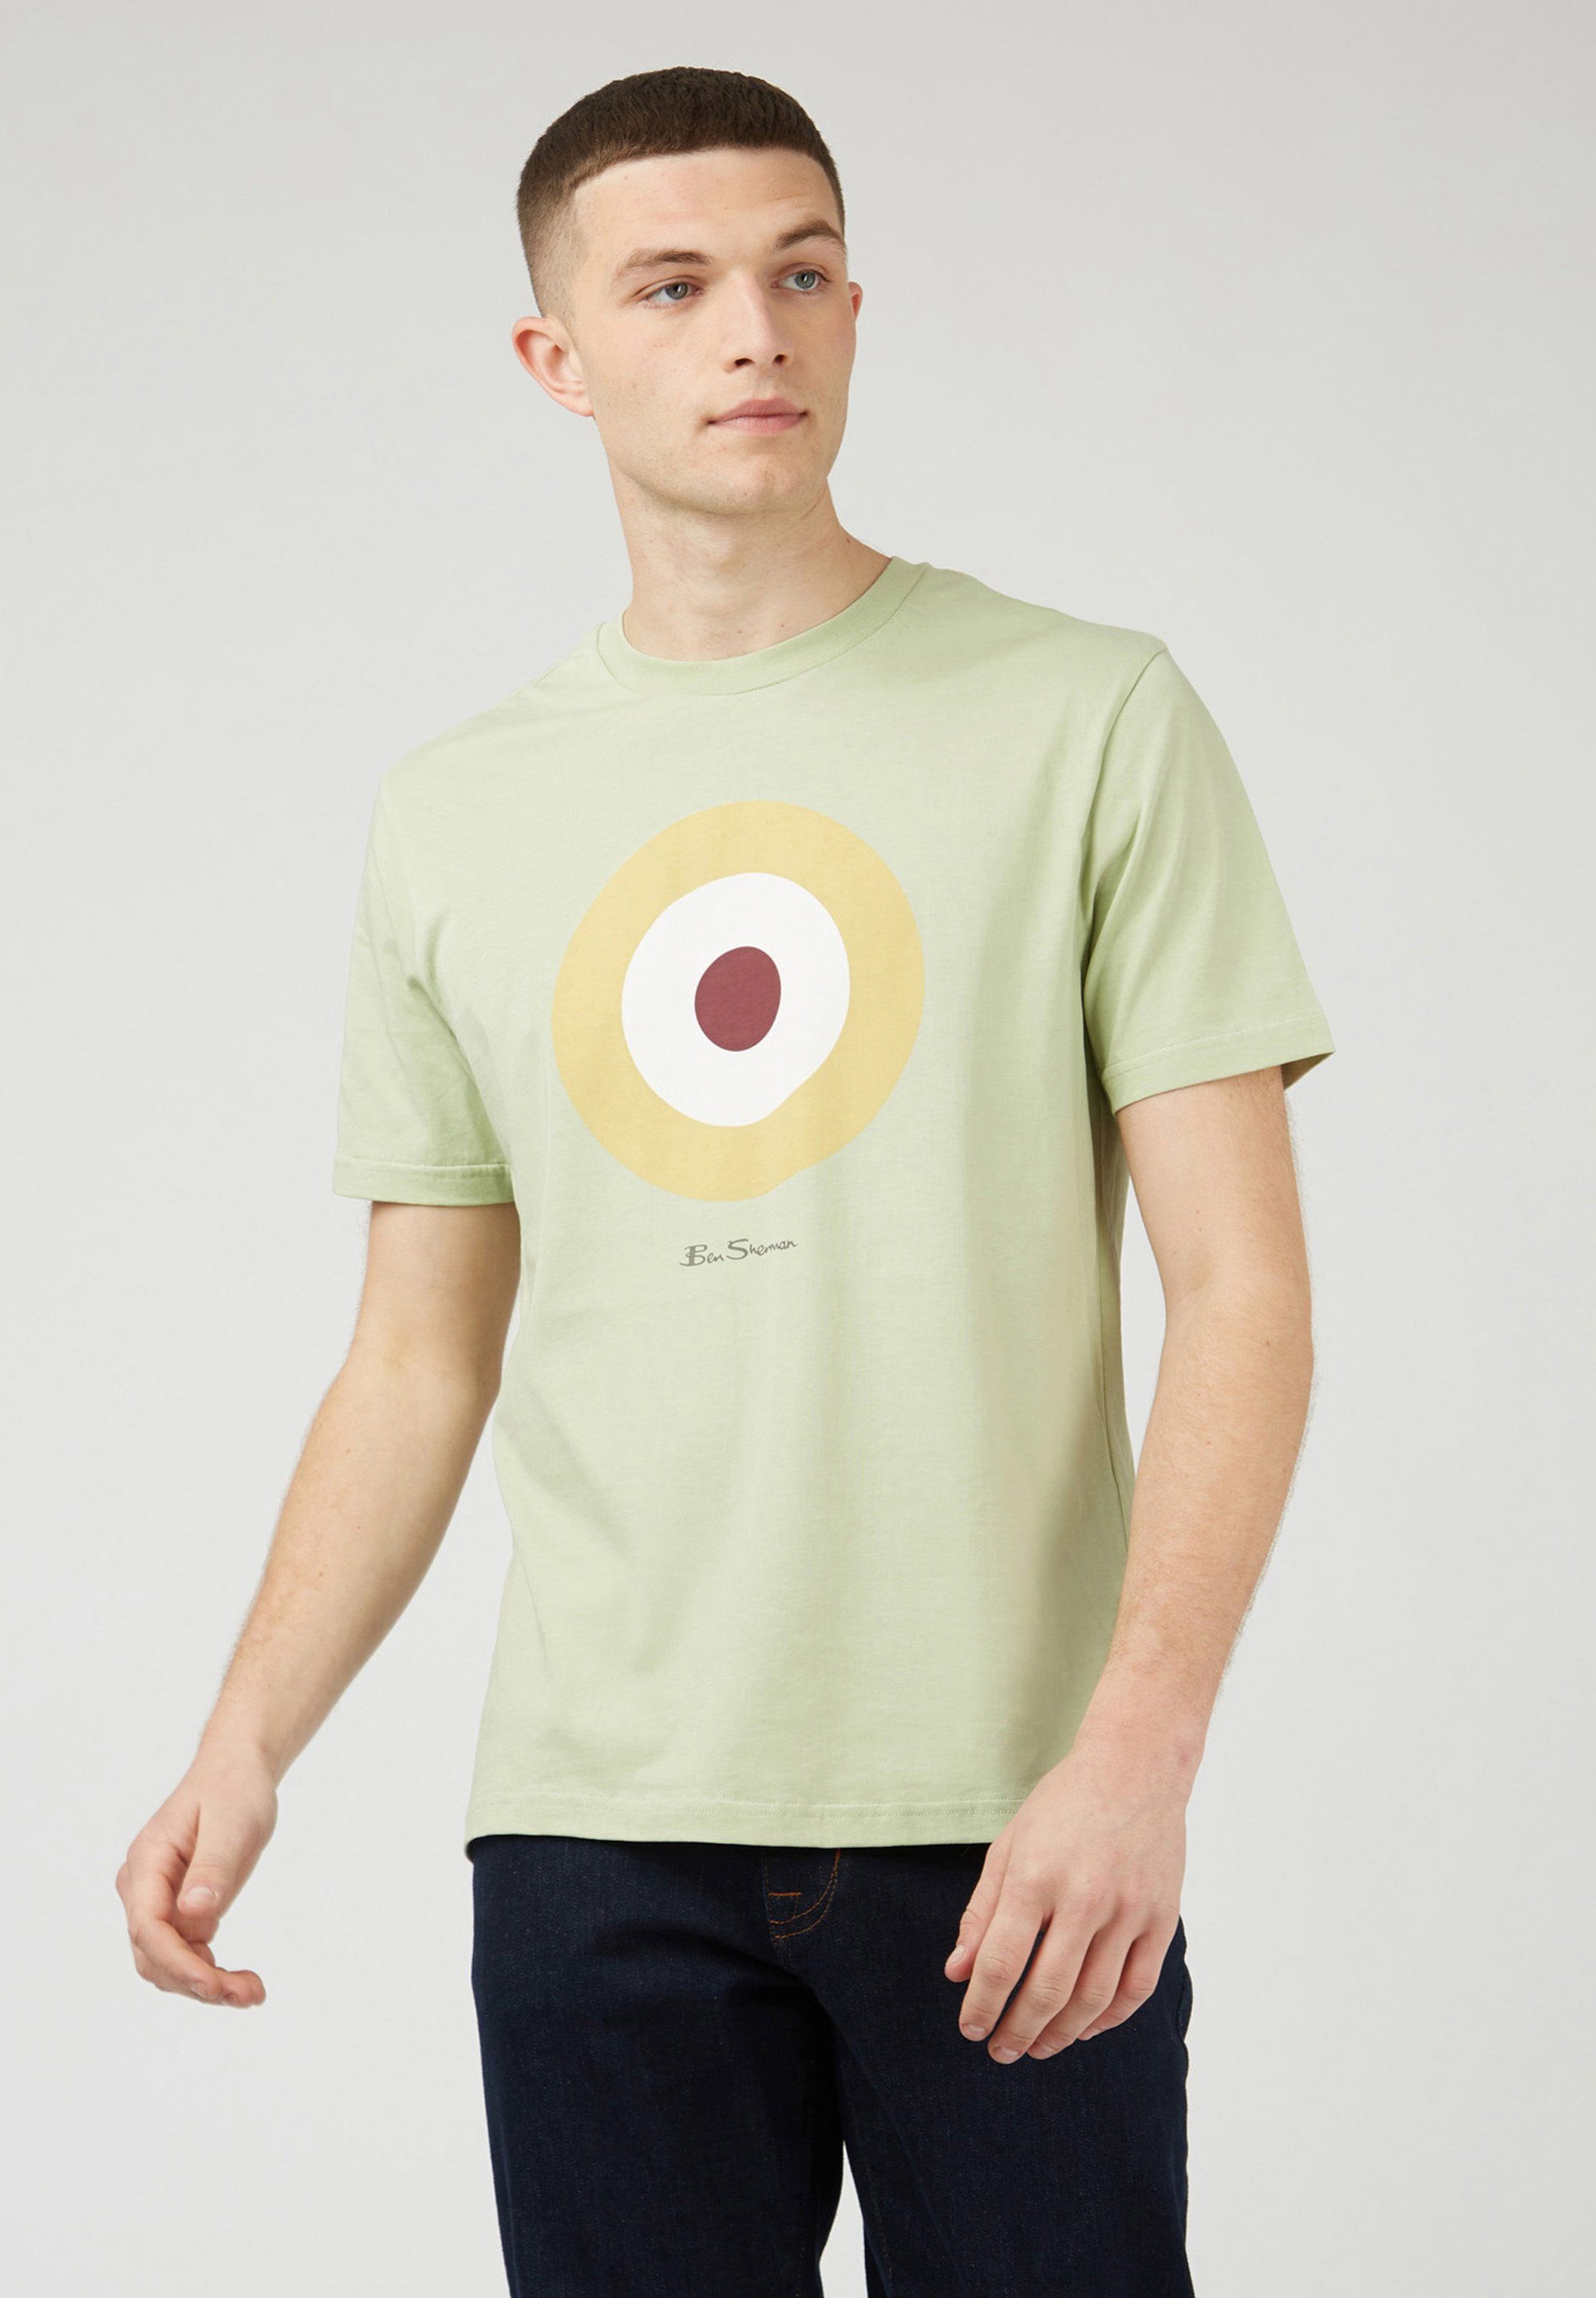 Ben Sherman T-Shirt Signature Target Tee Grafisch bedrucktes T-Shirt pistachio | T-Shirts